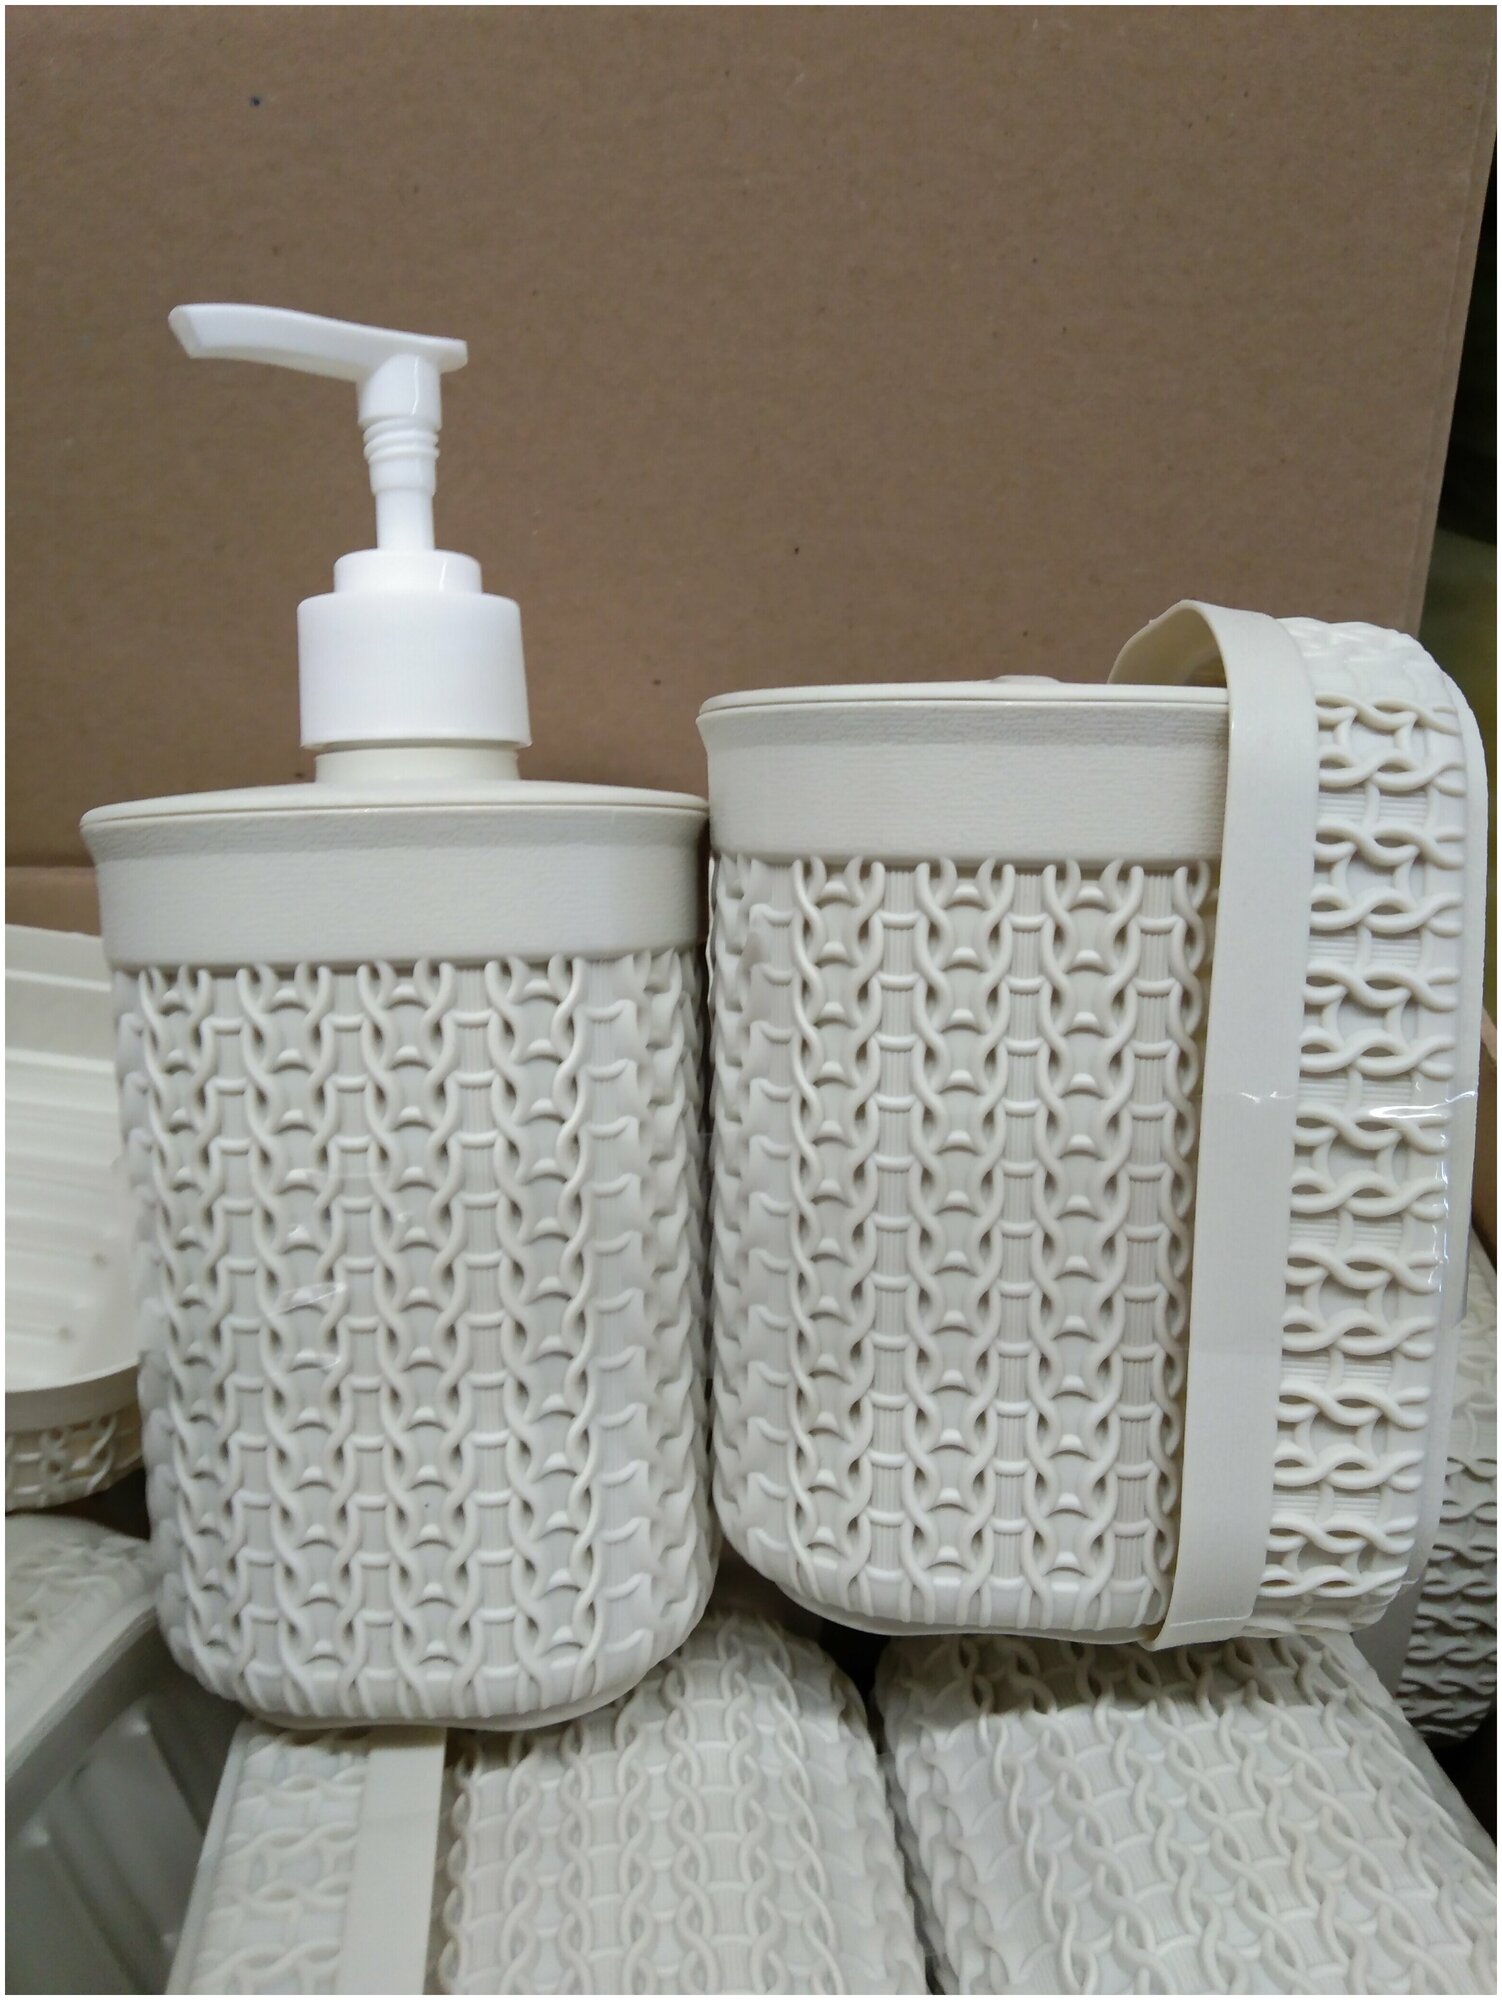 Набор для ванной : диспенсер для жидкого мыла + мыльница + стаканчик для зубных щеток + упаковка зубной пасты в подарок!